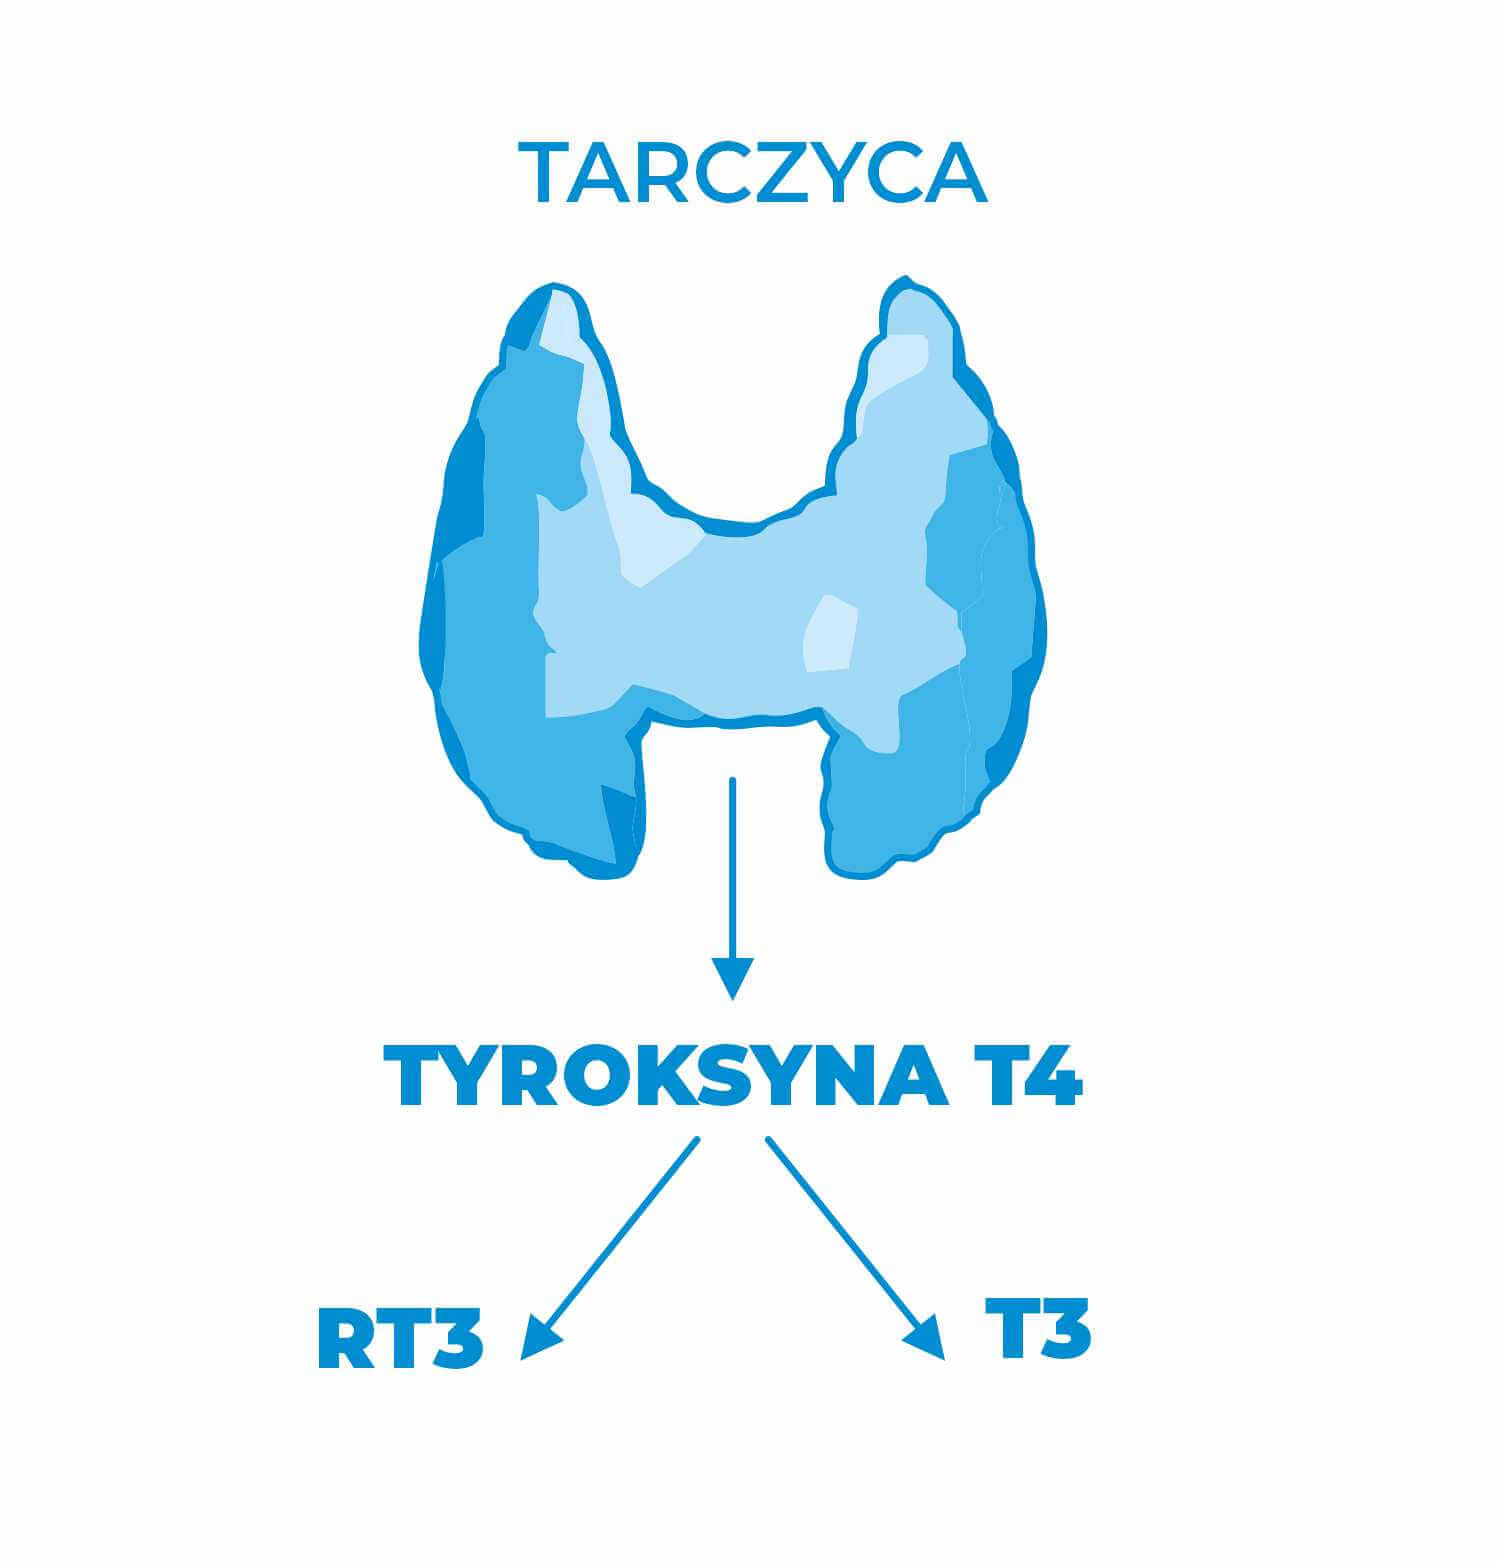 Tyroksyna, T4, FT4, niedoczynność tarczycy, nadczynność tarczycy, Hashimoto